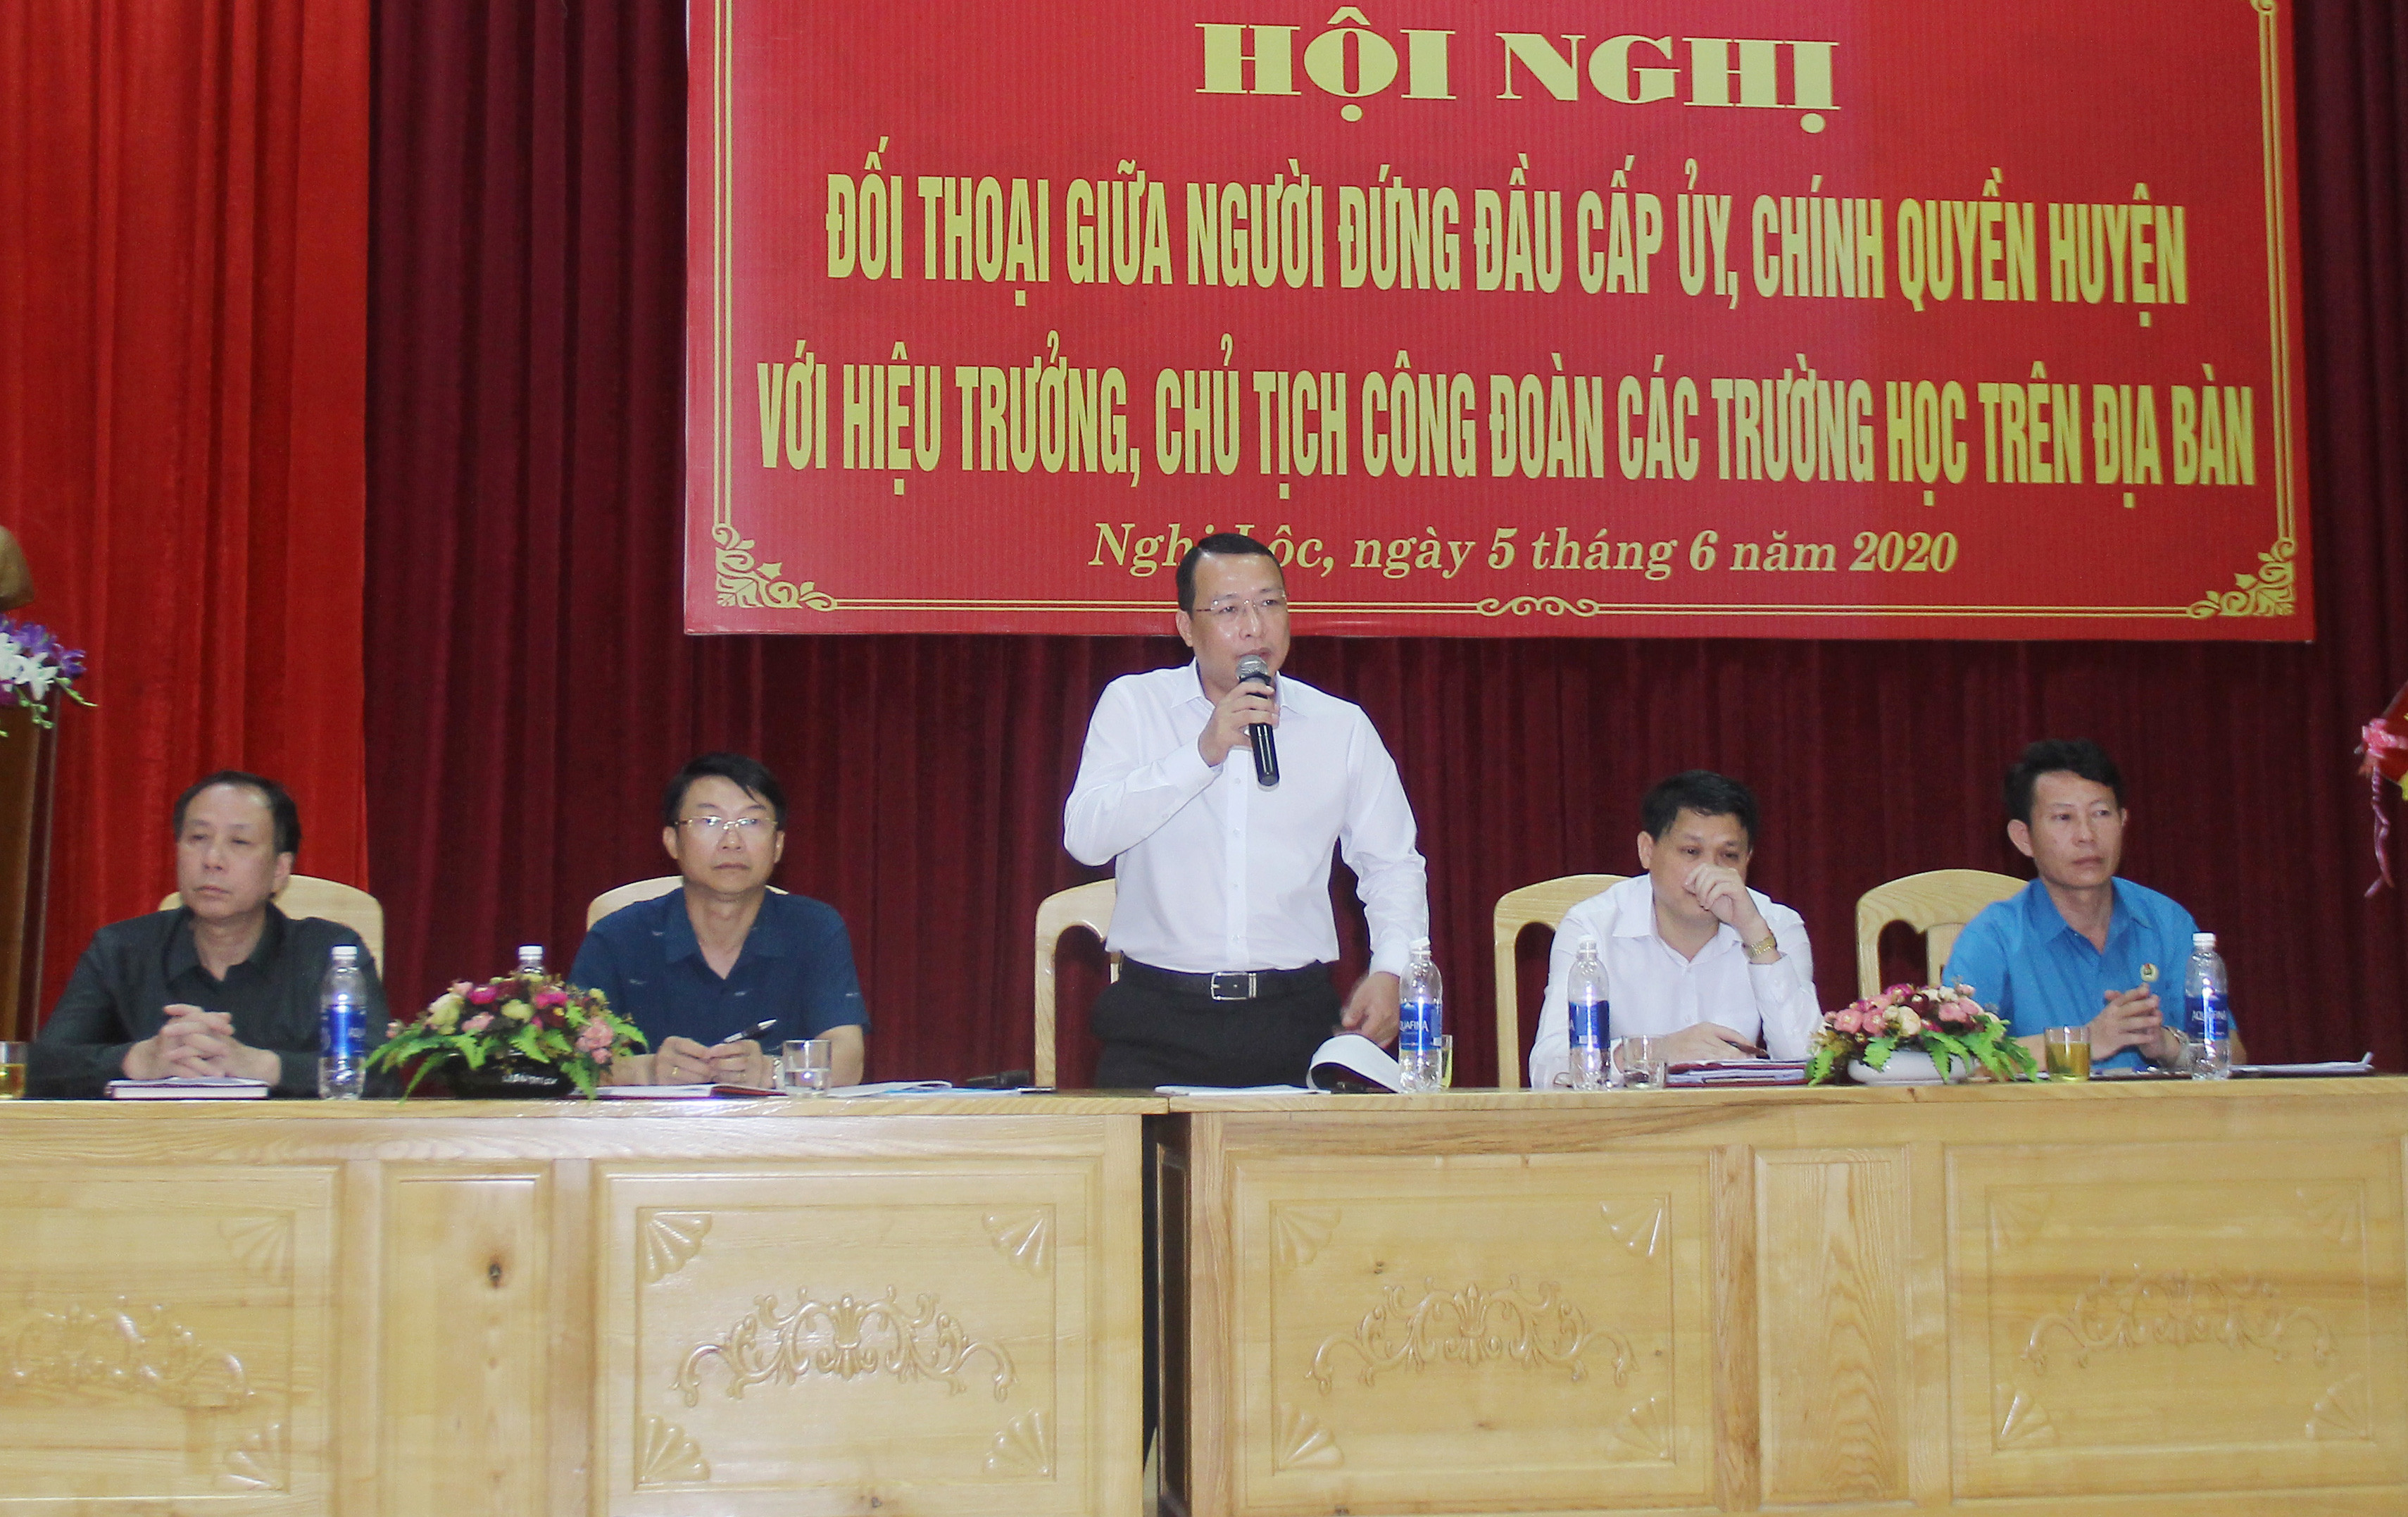 Sáng 5/6, huyện Nghi Lộc tổ chức hội nghị đối thoại giữa người đứng đầu cấp ủy, chính quyền huyện với hiệu trưởng, chủ tịch Công đoàn 86 trường thuộc 3 cấp học trên địa bàn toàn huyện. Ảnh: Mai Hoa